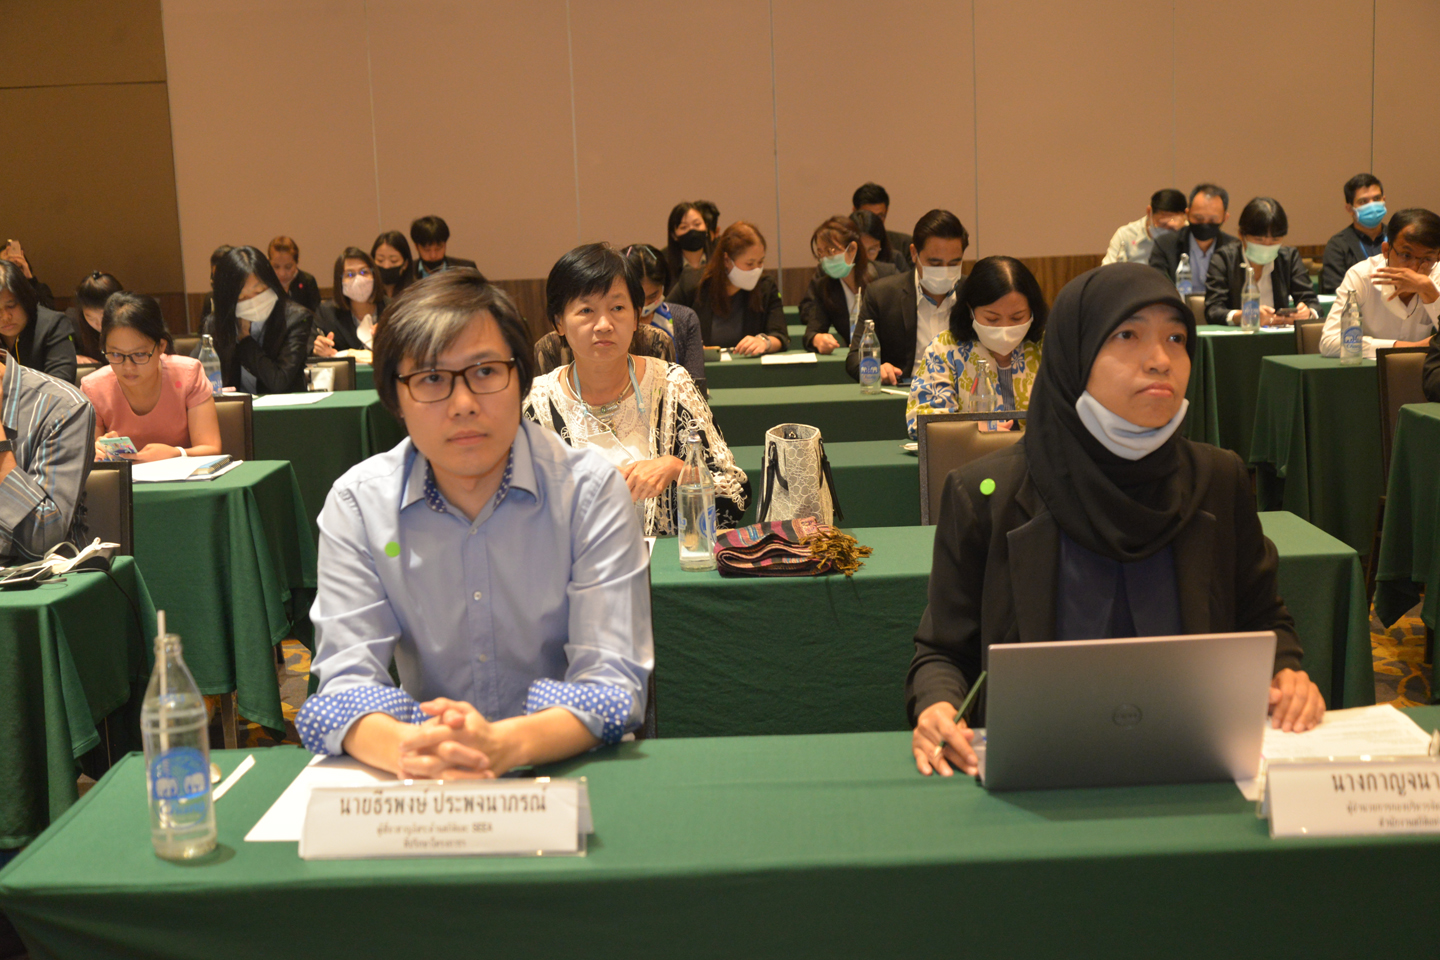 ประชุมแนวปฏิบัติการจัดทำระบบบัญชีเศรษฐกิจสิ่งแวดล้อม (SEEA) ของประเทศไทย